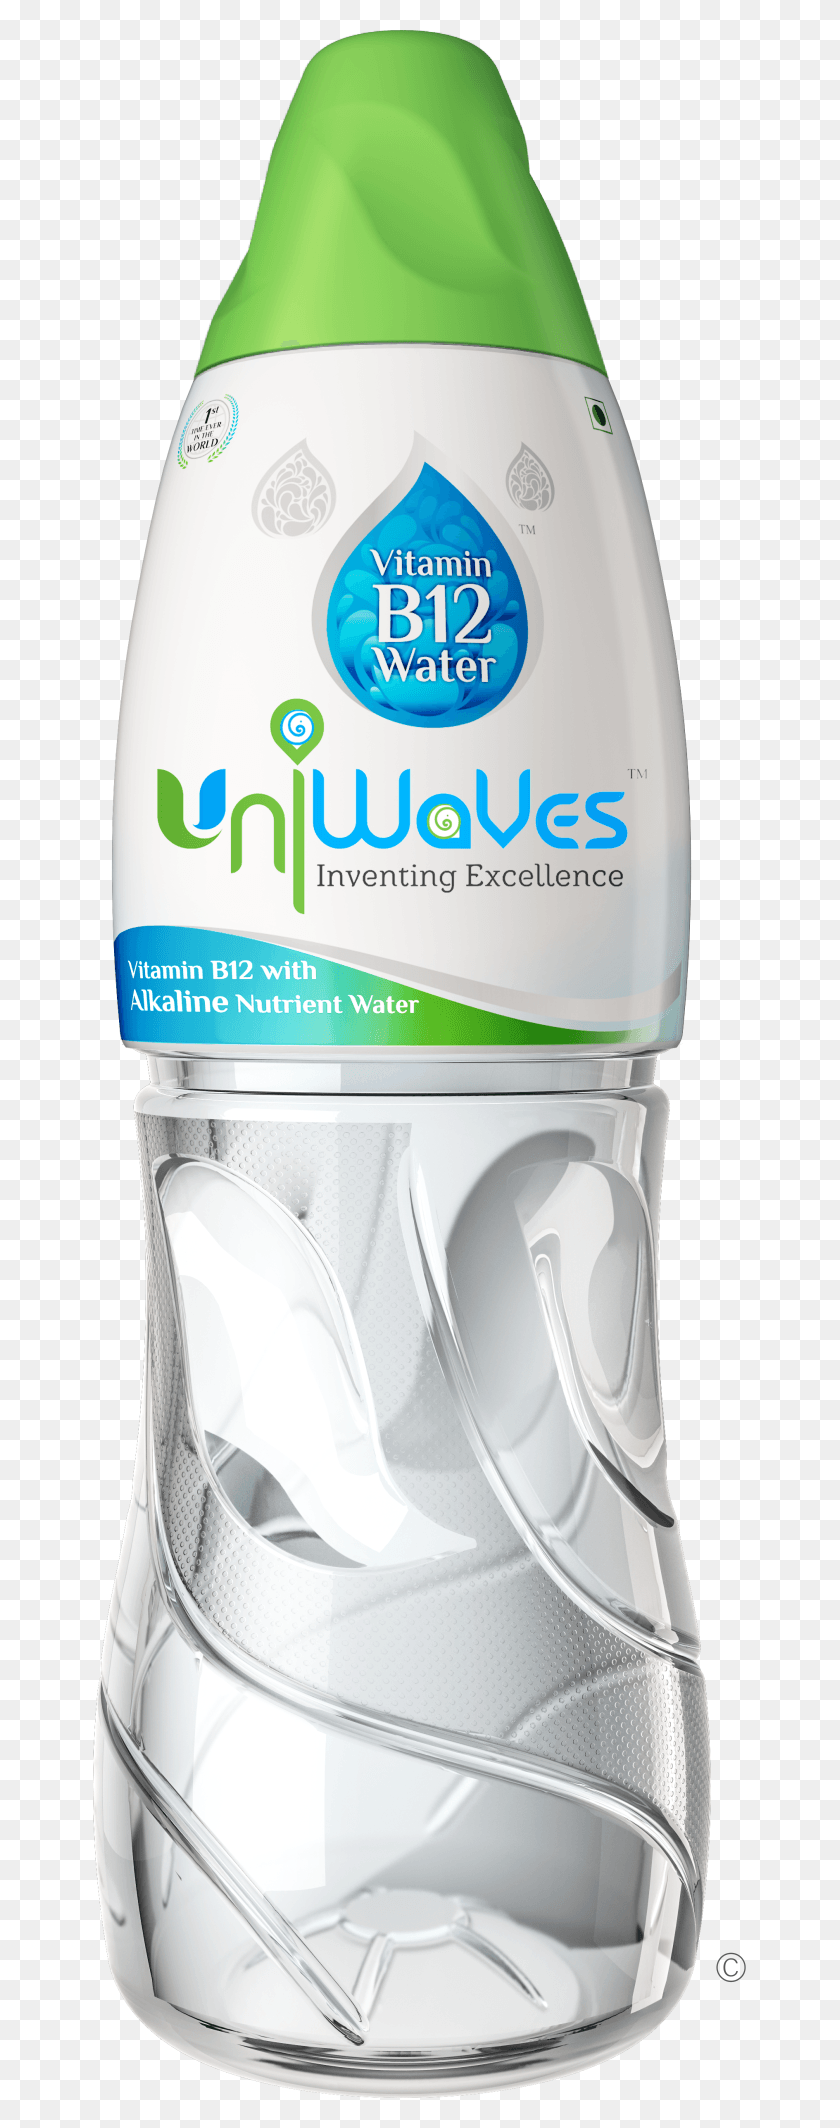 653x2068 La Vitamina B12 Agua Con Nutrientes Alcalinos Agua Uniwaves Agua, Botella, Mezclador, Electrodoméstico Hd Png